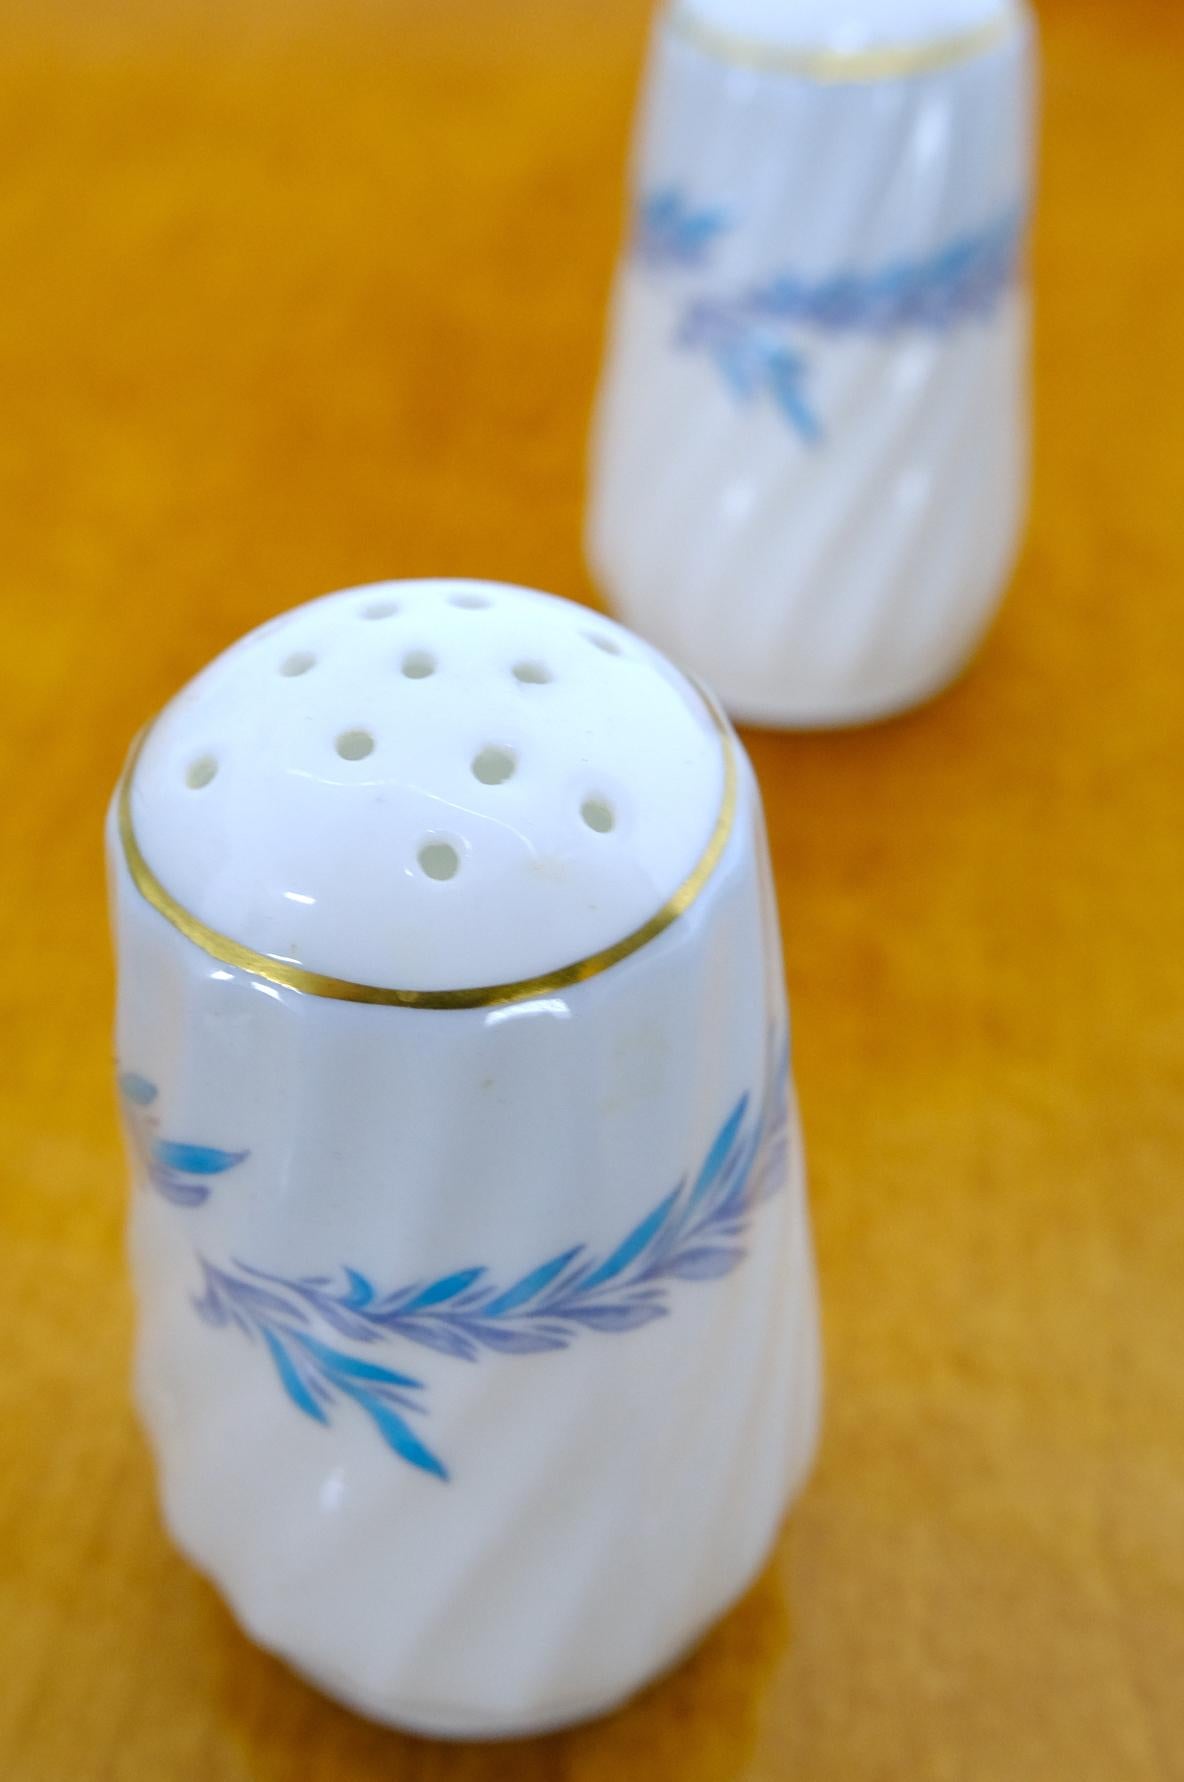 Set of 16 Minton Porcelain China Made in England Diner Plates Salt & Pepper Set For Sale 4